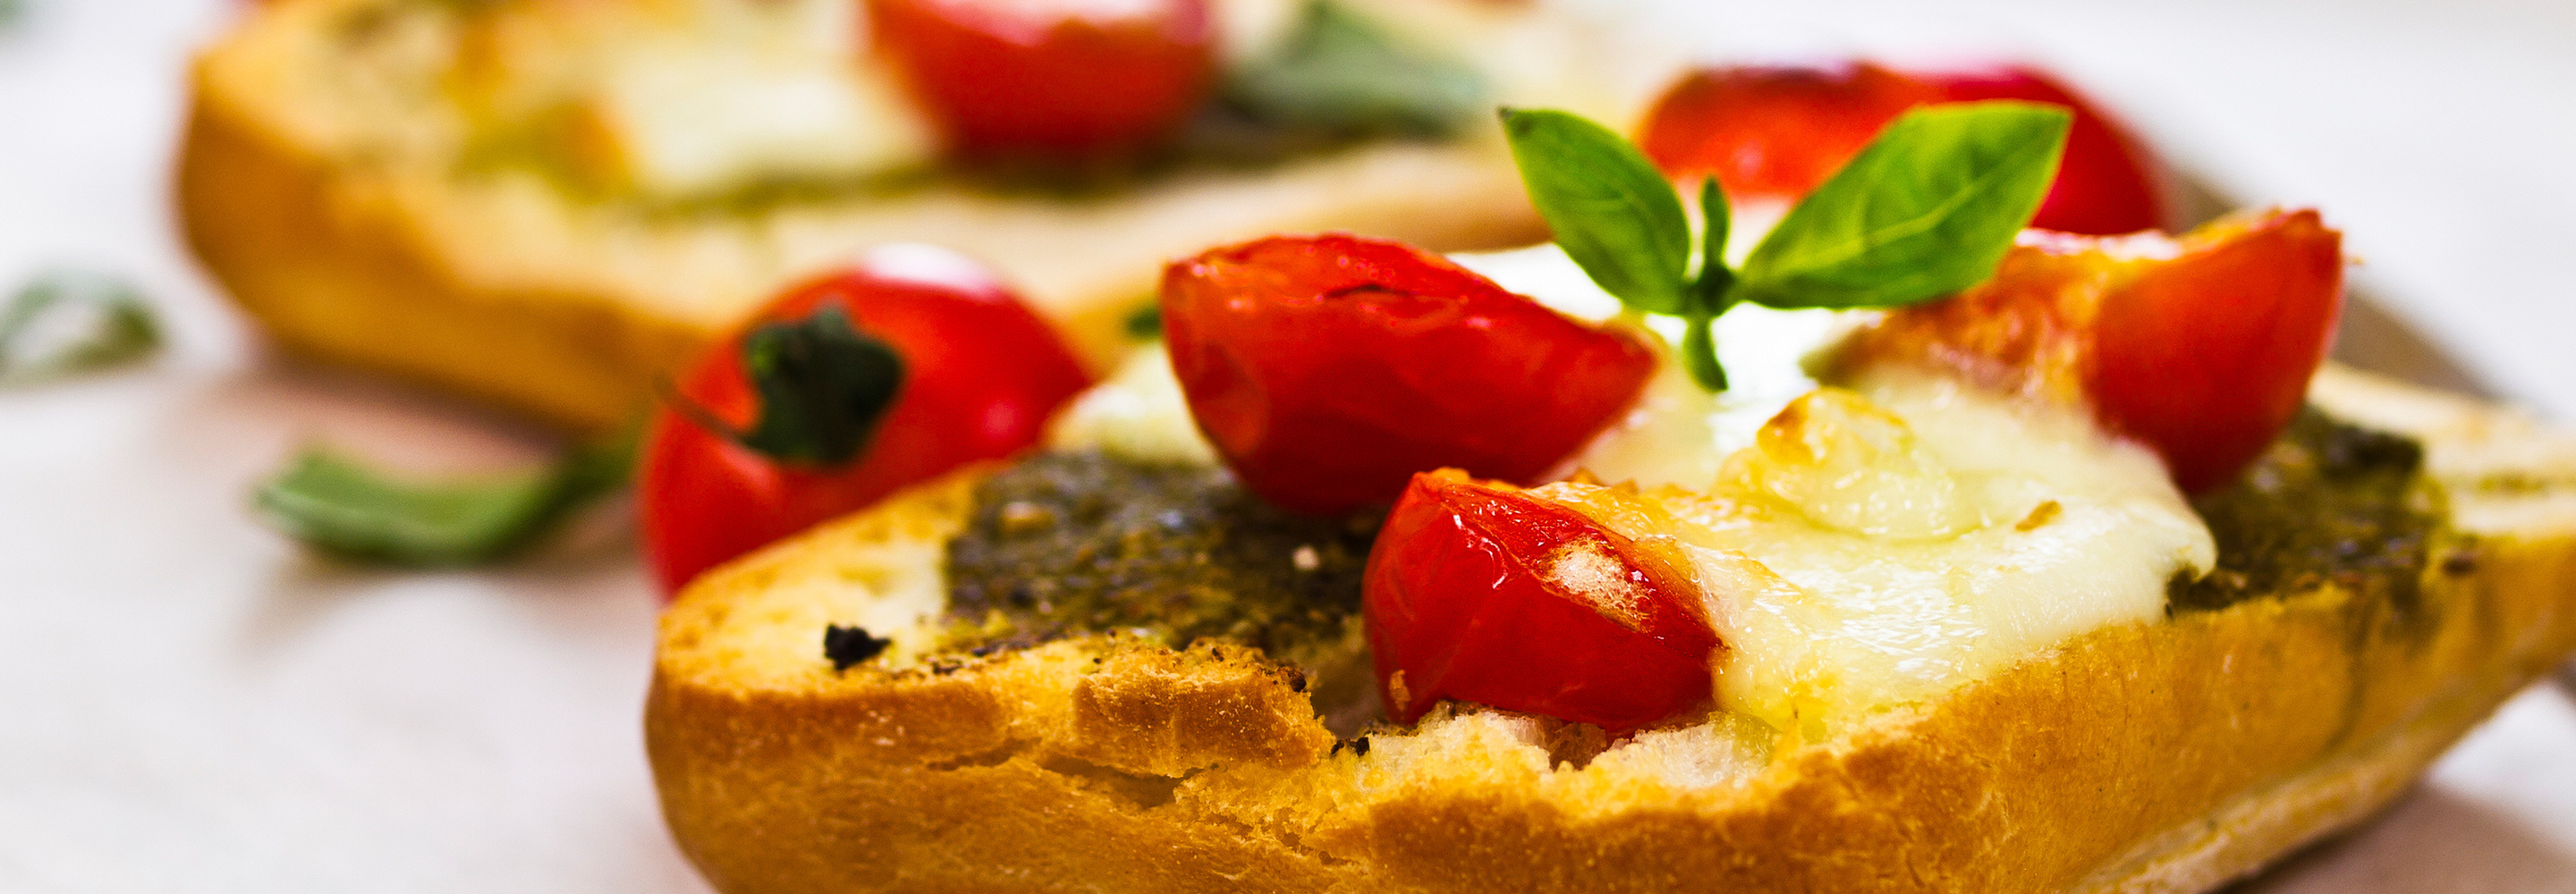 Bruschetta sycylijska - Galbani – od ponad 130 lat dostarczamy najlepsze włoskie smaki na talerze całego świata